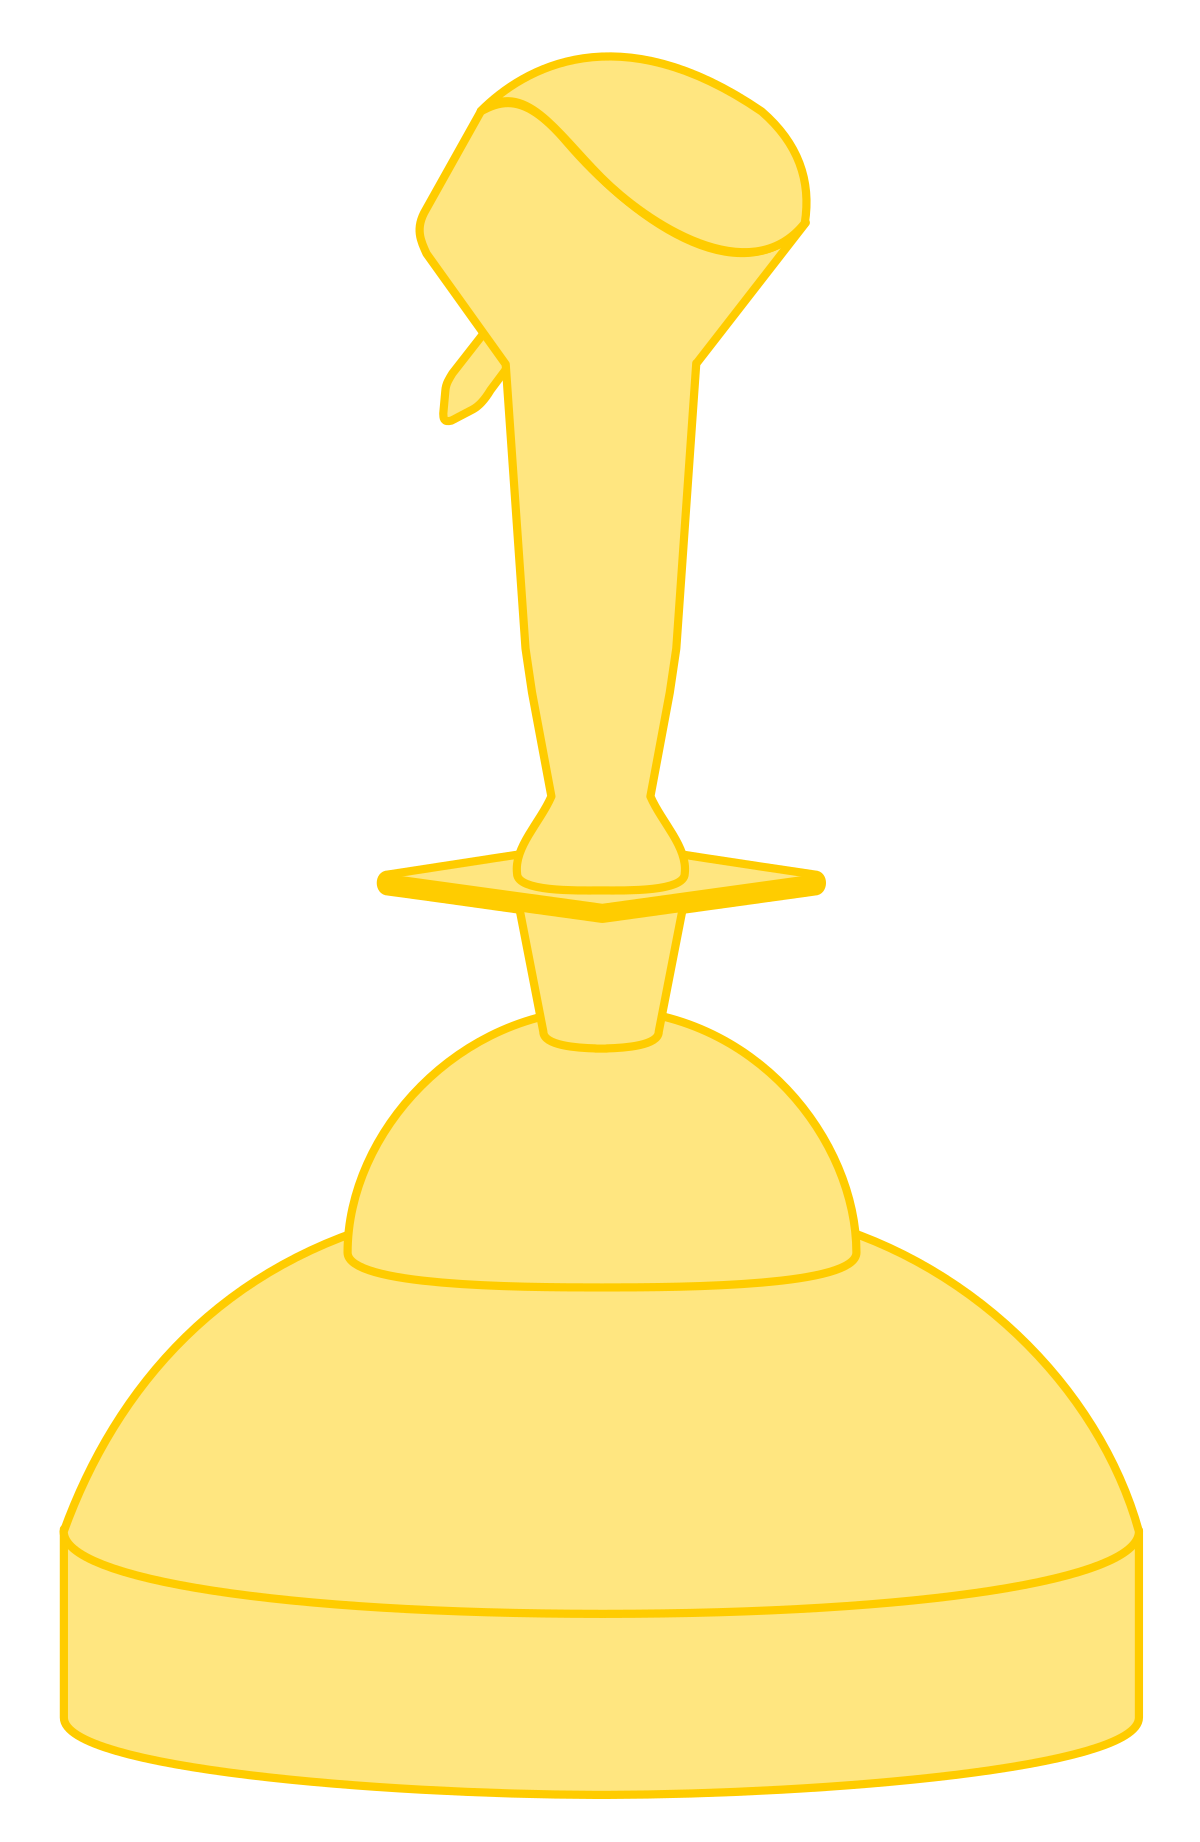 Golden Award Download HQ PNG Image